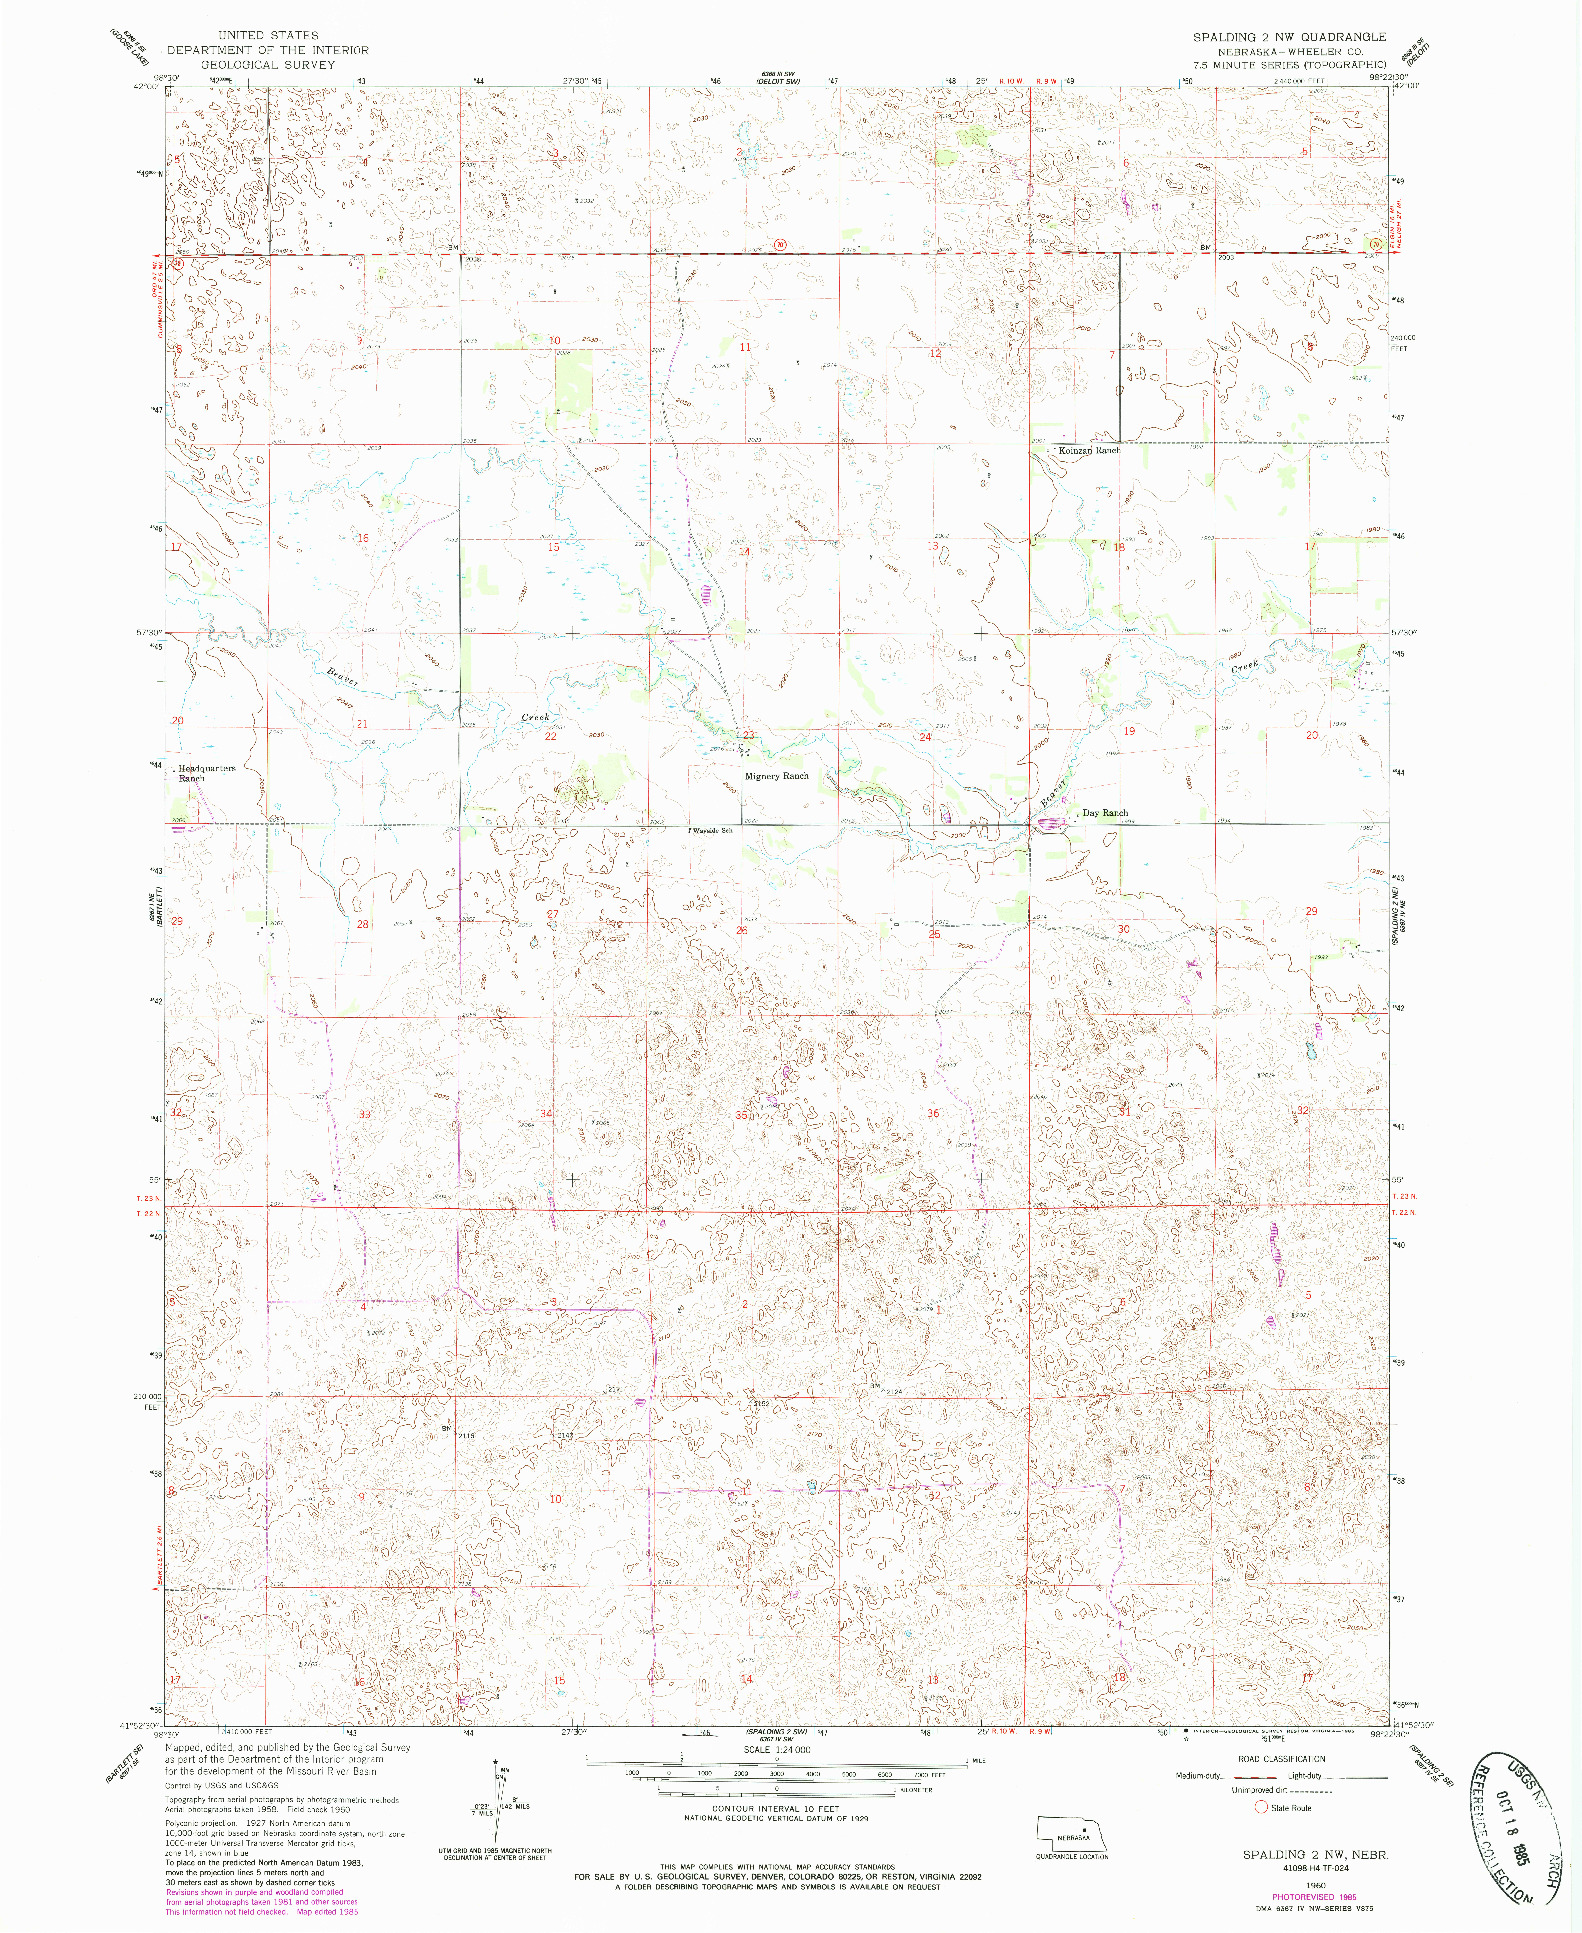 USGS 1:24000-SCALE QUADRANGLE FOR SPALDING 2 NW, NE 1960